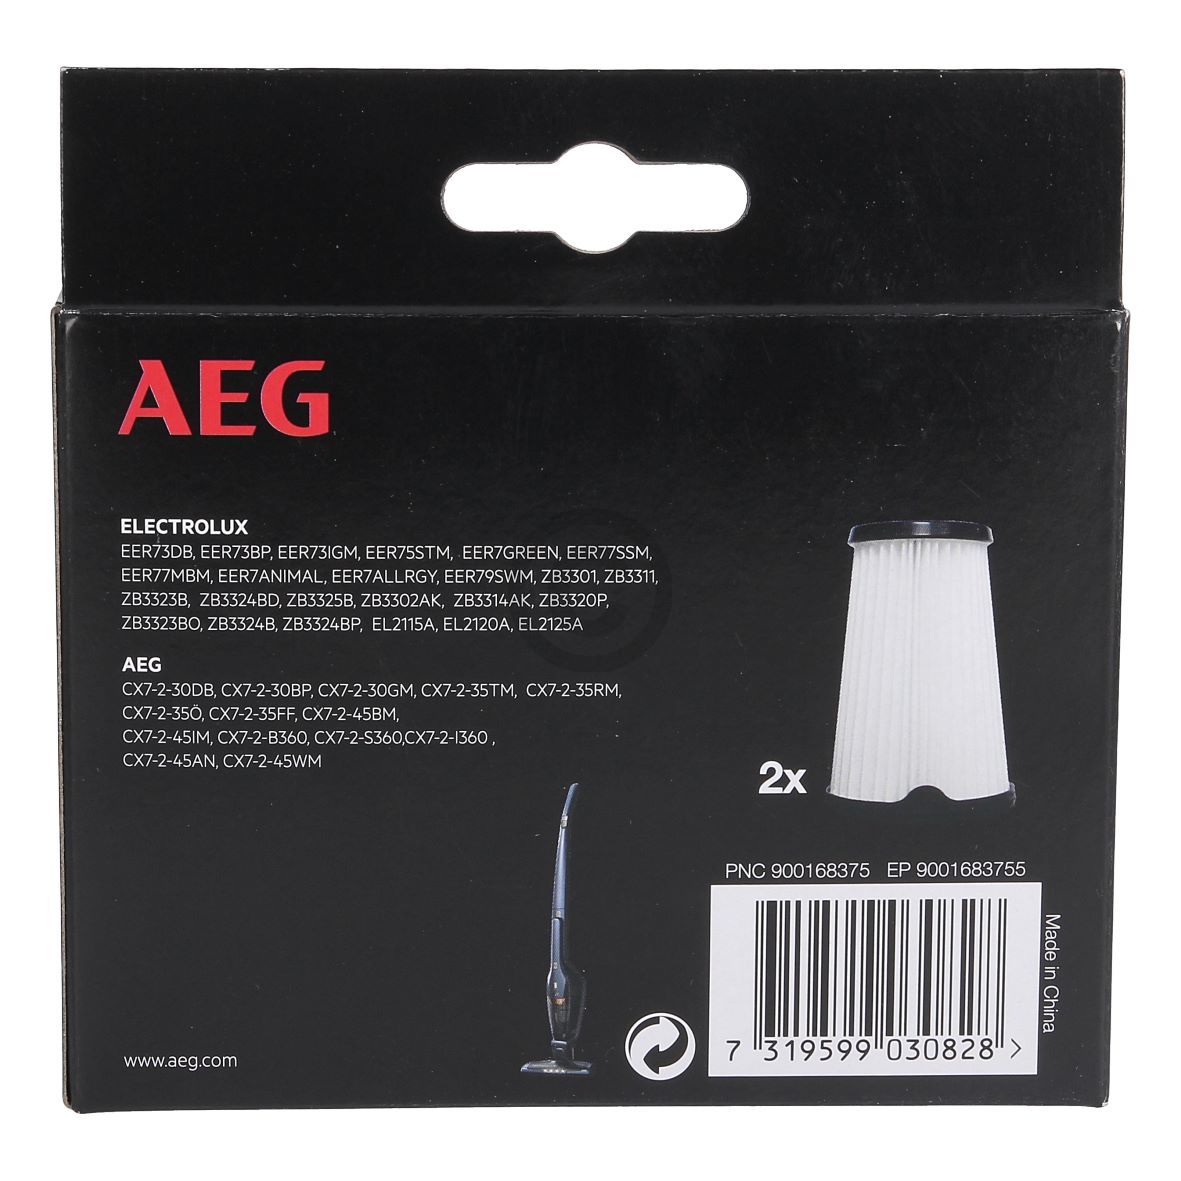 Innenfilter kompatibel mit AEG 900168375/5 AEF150 für Stielhandstaubsauger Akkusauger 2Stk